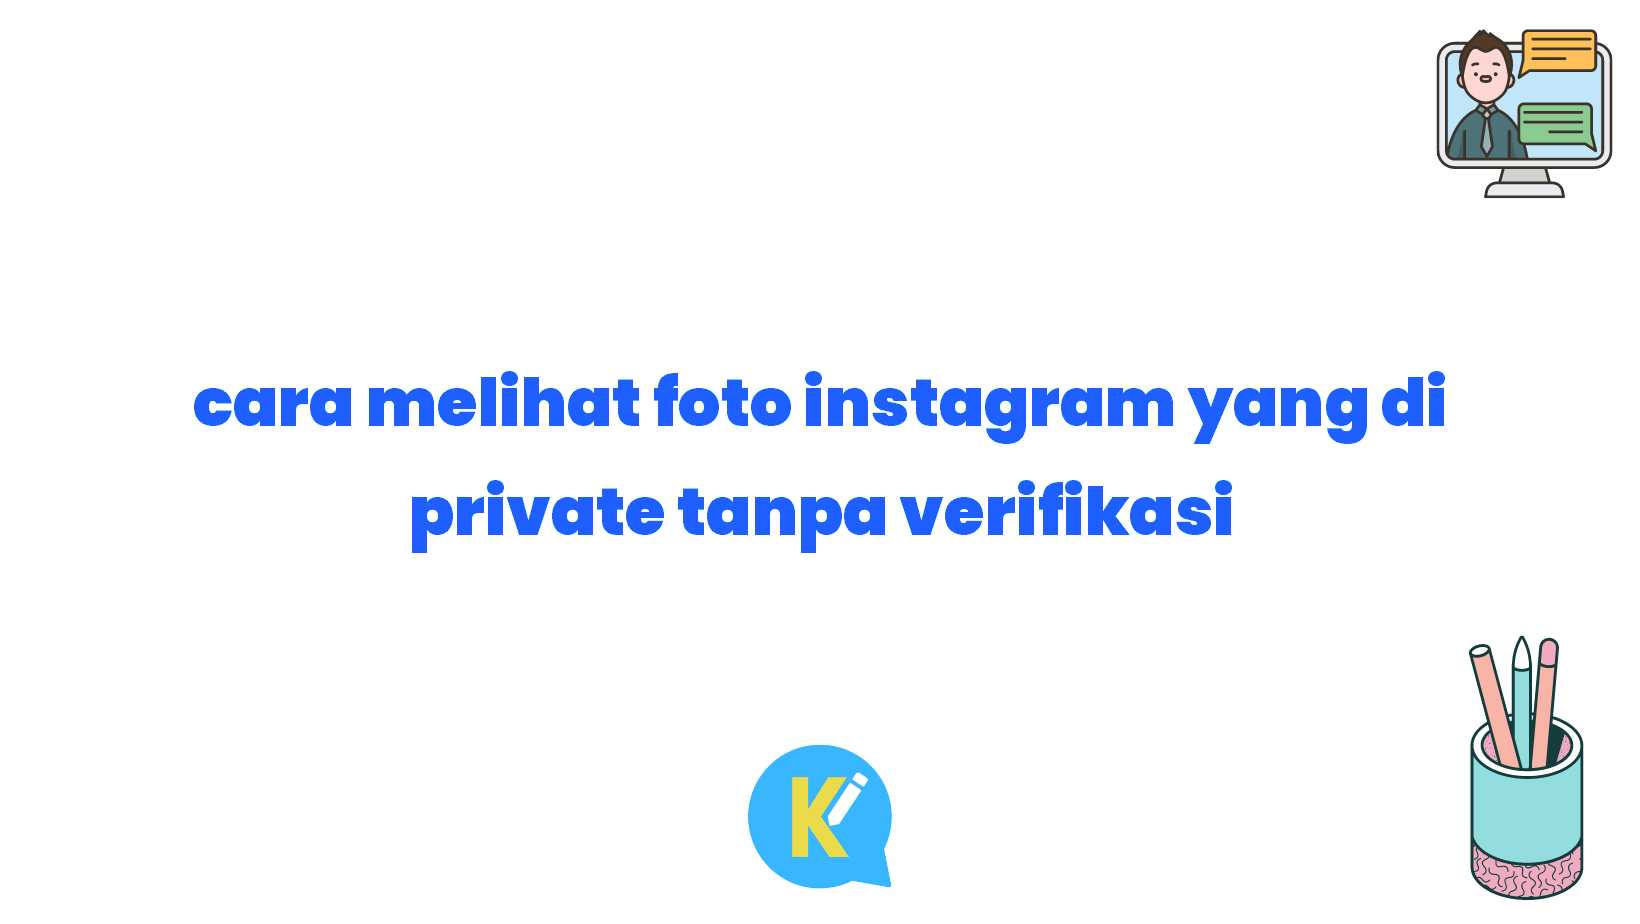 cara melihat foto instagram yang di private tanpa verifikasi